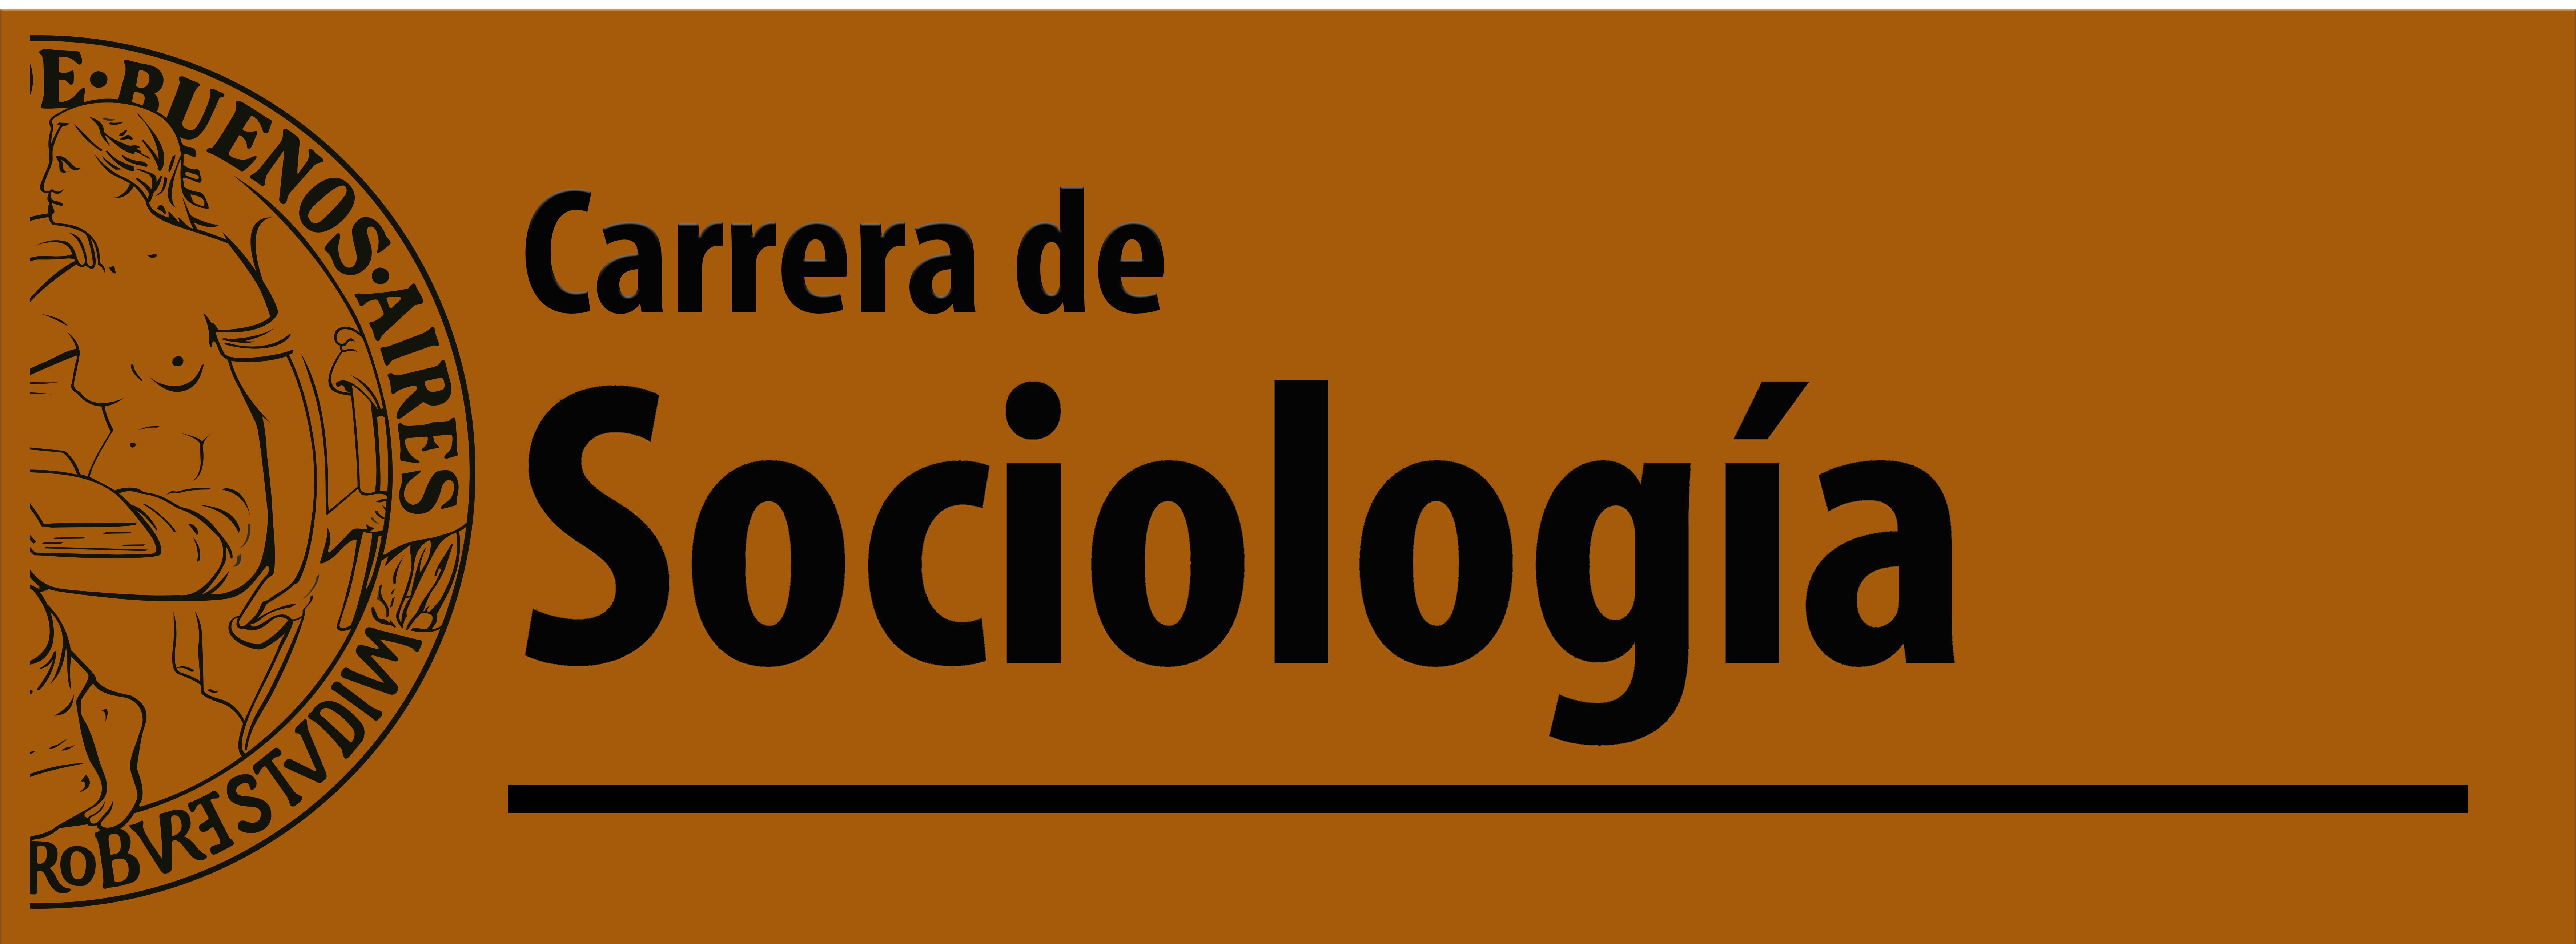 Presentación – Carrera de Sociología